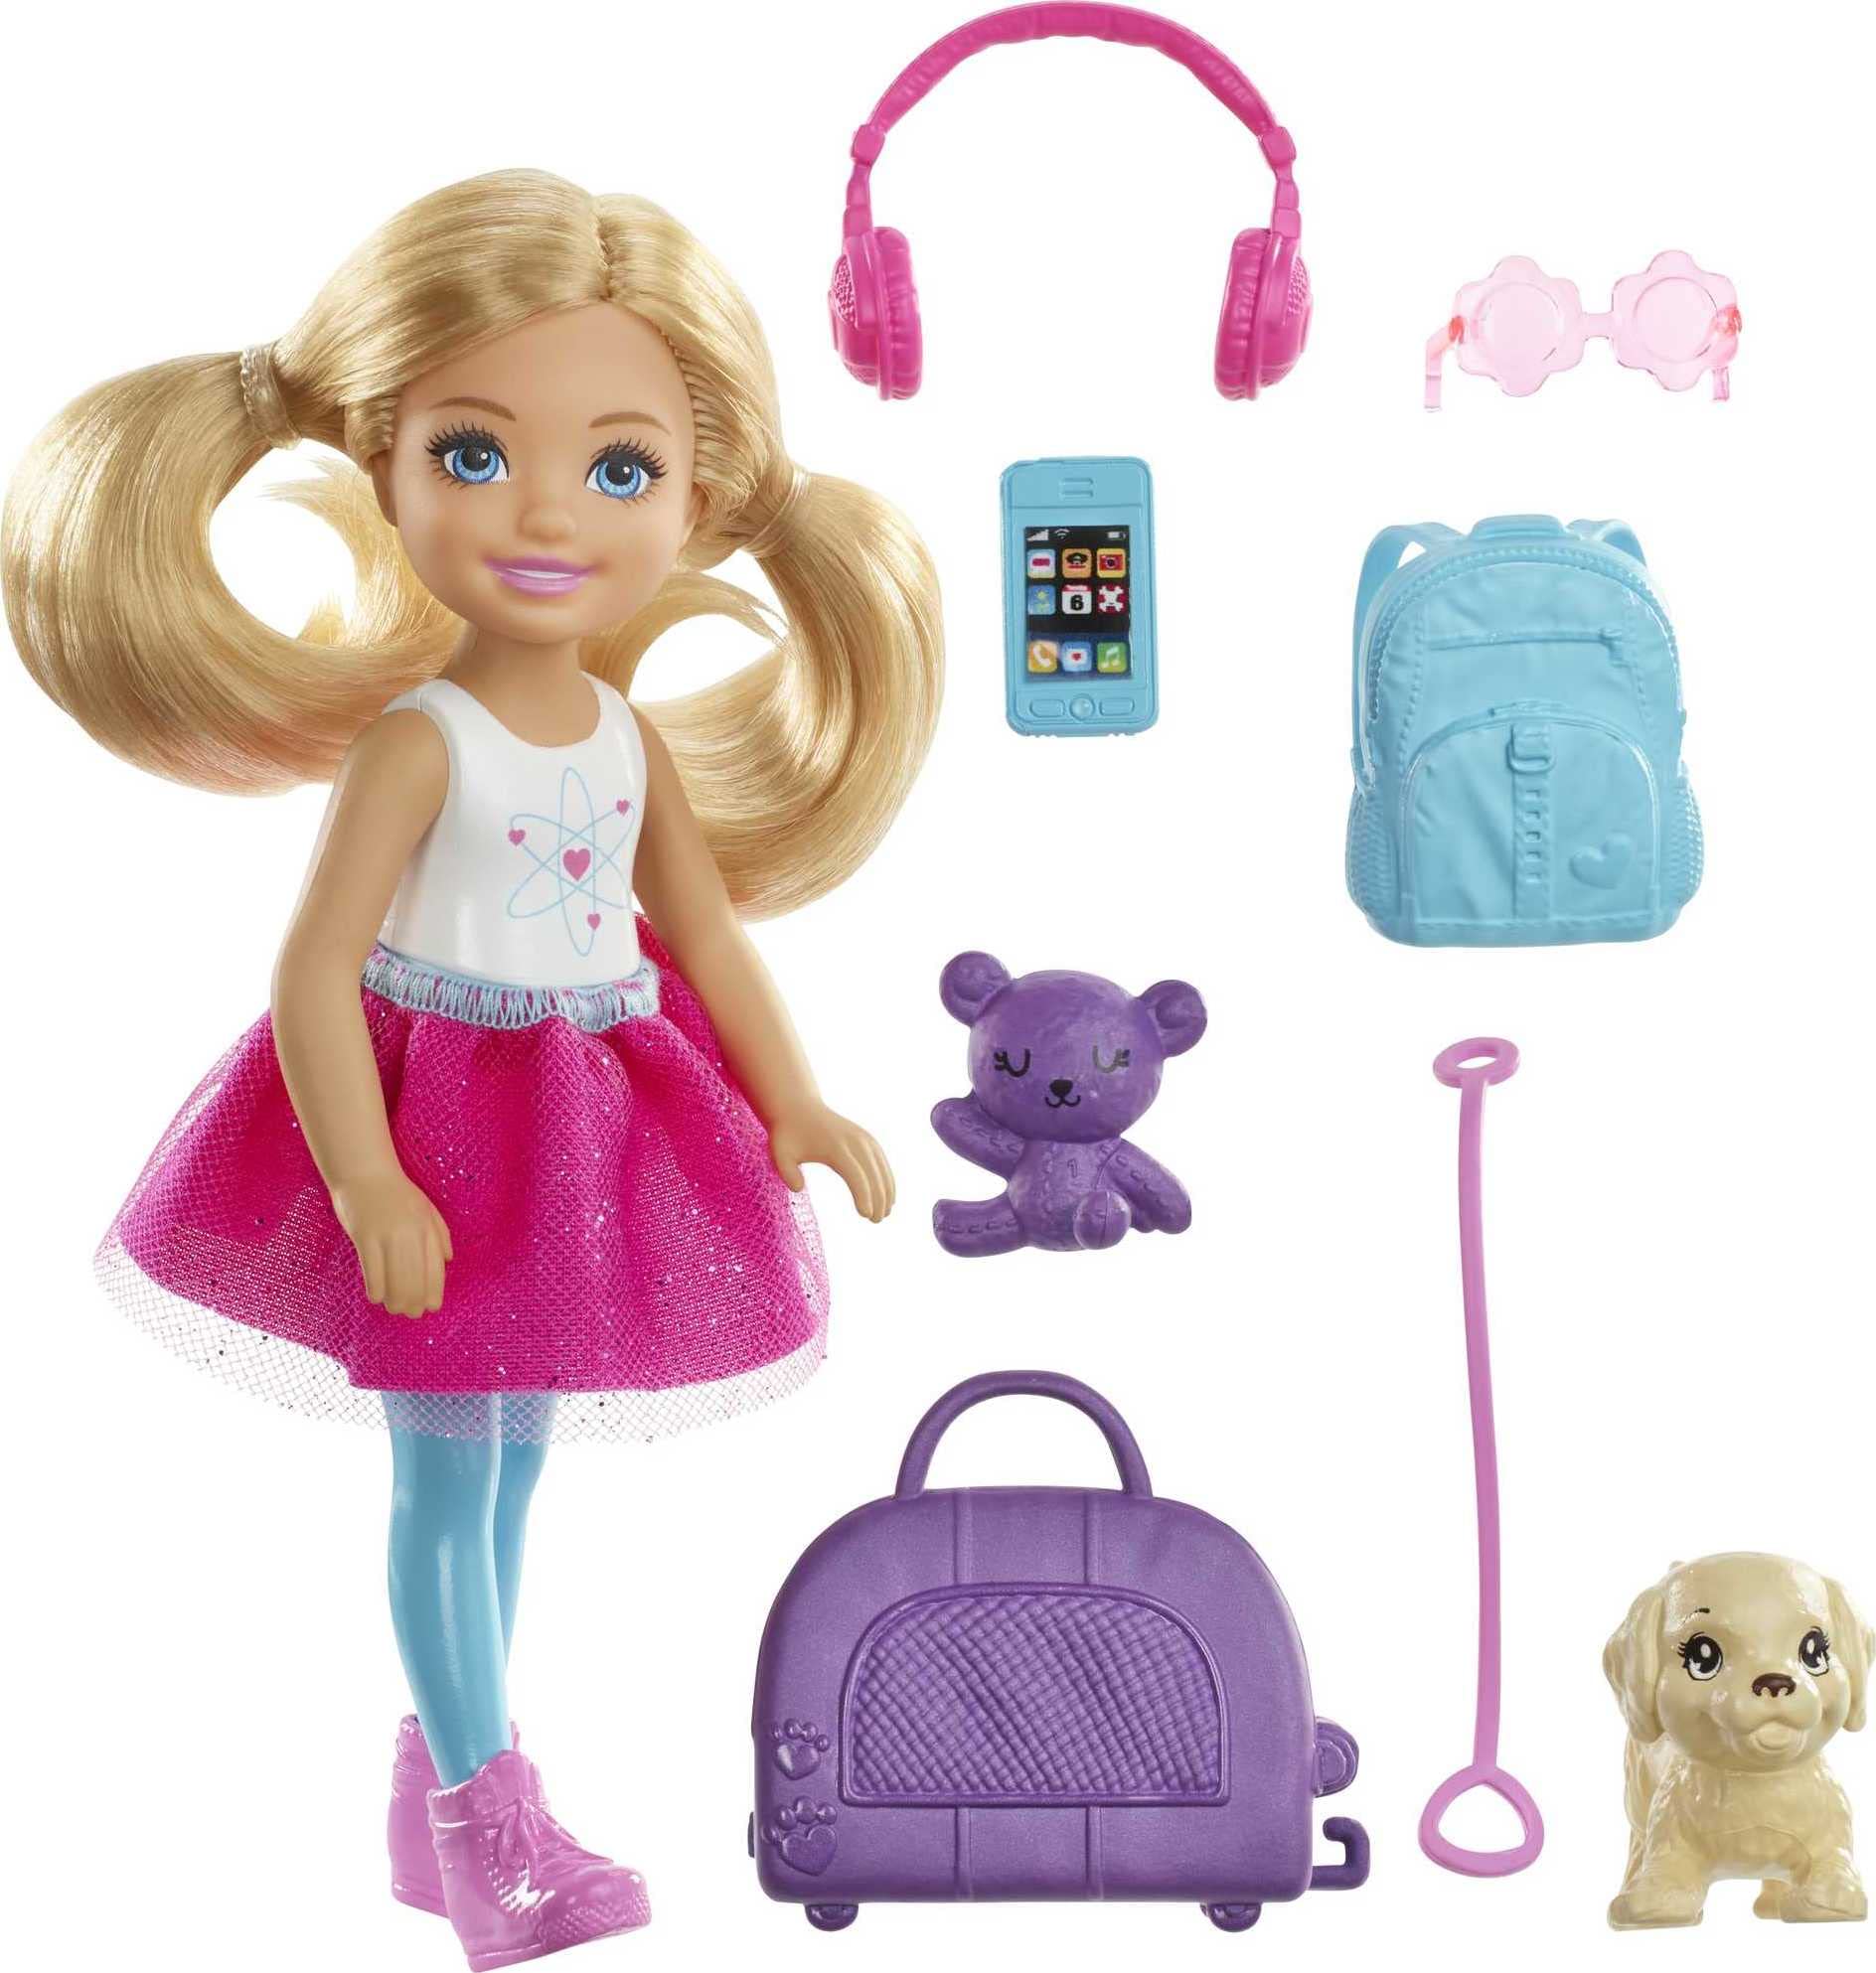 Populaire Barbie Voyage Mini-poupée ​Chelsea Blonde, avec Un Chien, Sac de Voyage et Accessoires, Jouet pour Enfant, FWV20 g4K4h4Lmz juste de l´acheter